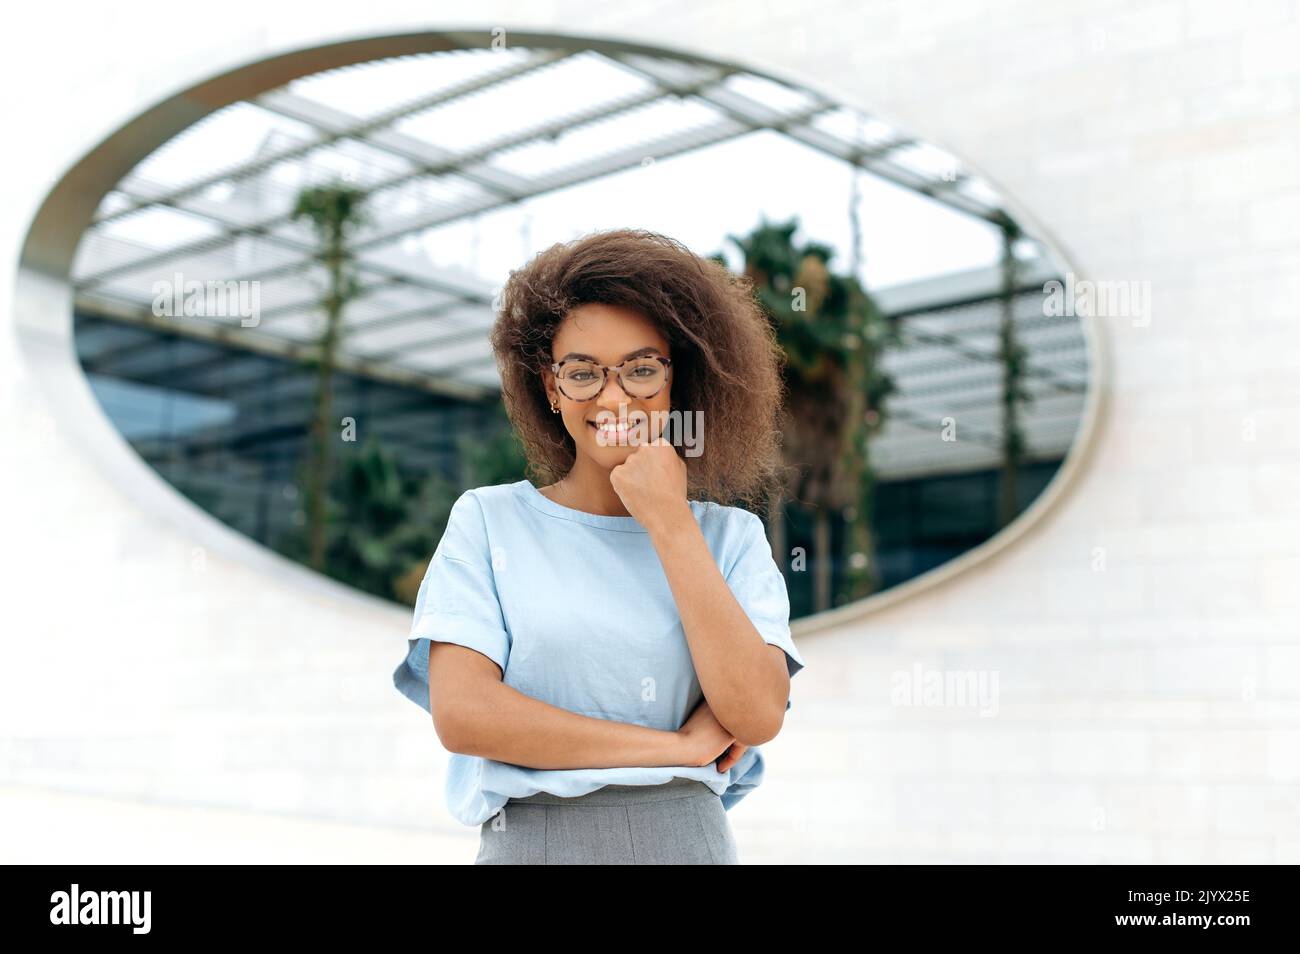 Retrato de una hermosa mujer afroamericana segura y positiva con pelo rizado, luciendo una camisa azul, con gafas, de pie al aire libre, mirando la cámara, sonriendo amable Foto de stock